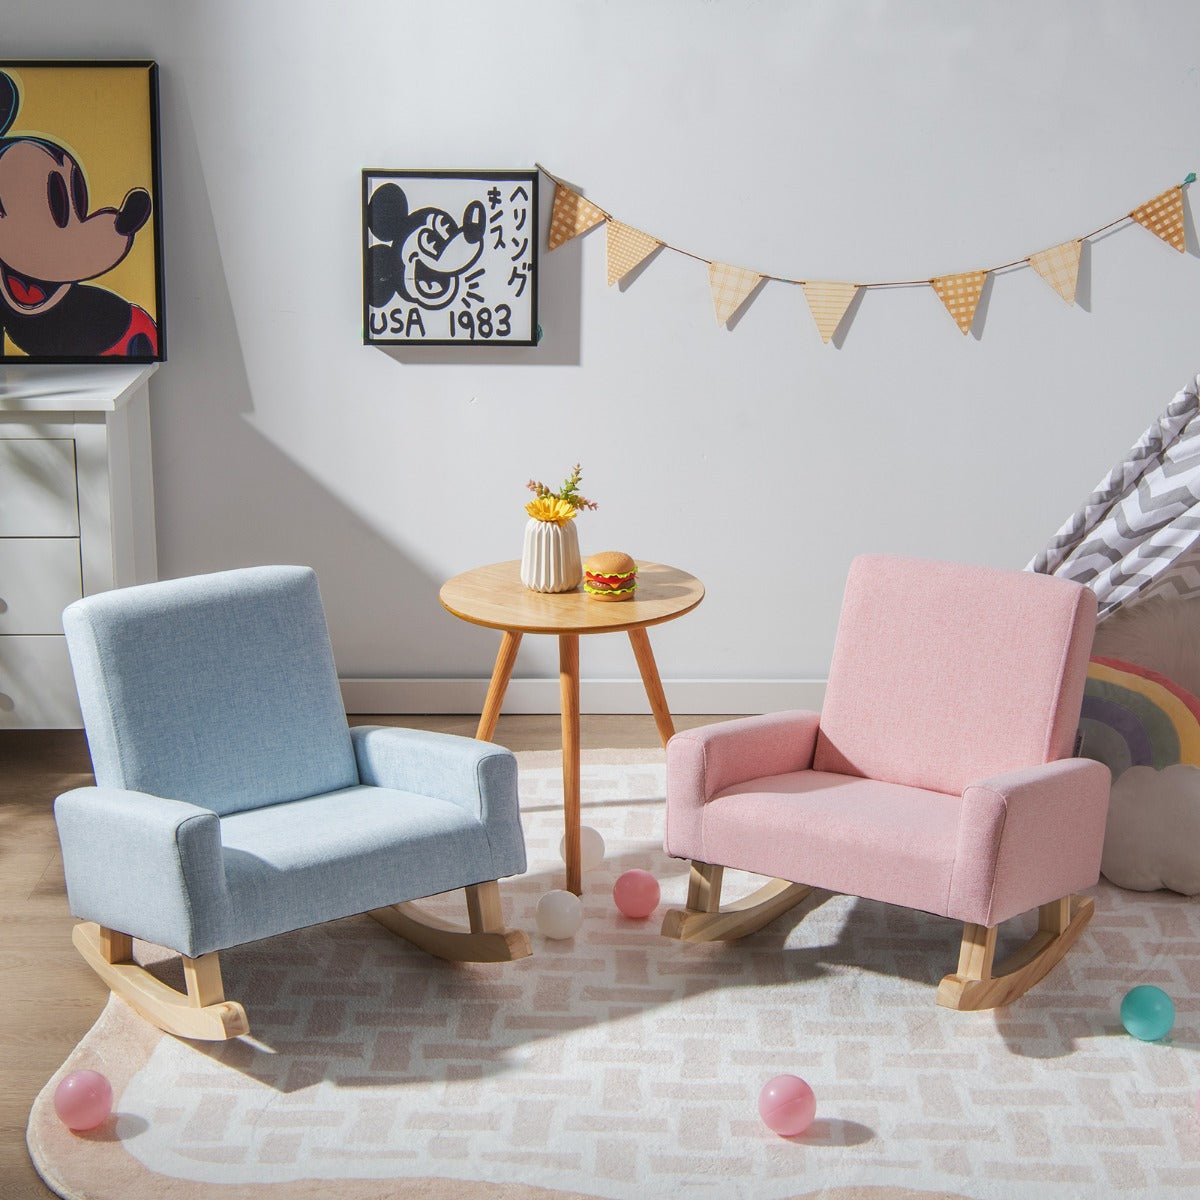 Safe Kids Rocking Chair - Pink, Wood Legs, Anti-tipping Design for Joyful Playtime